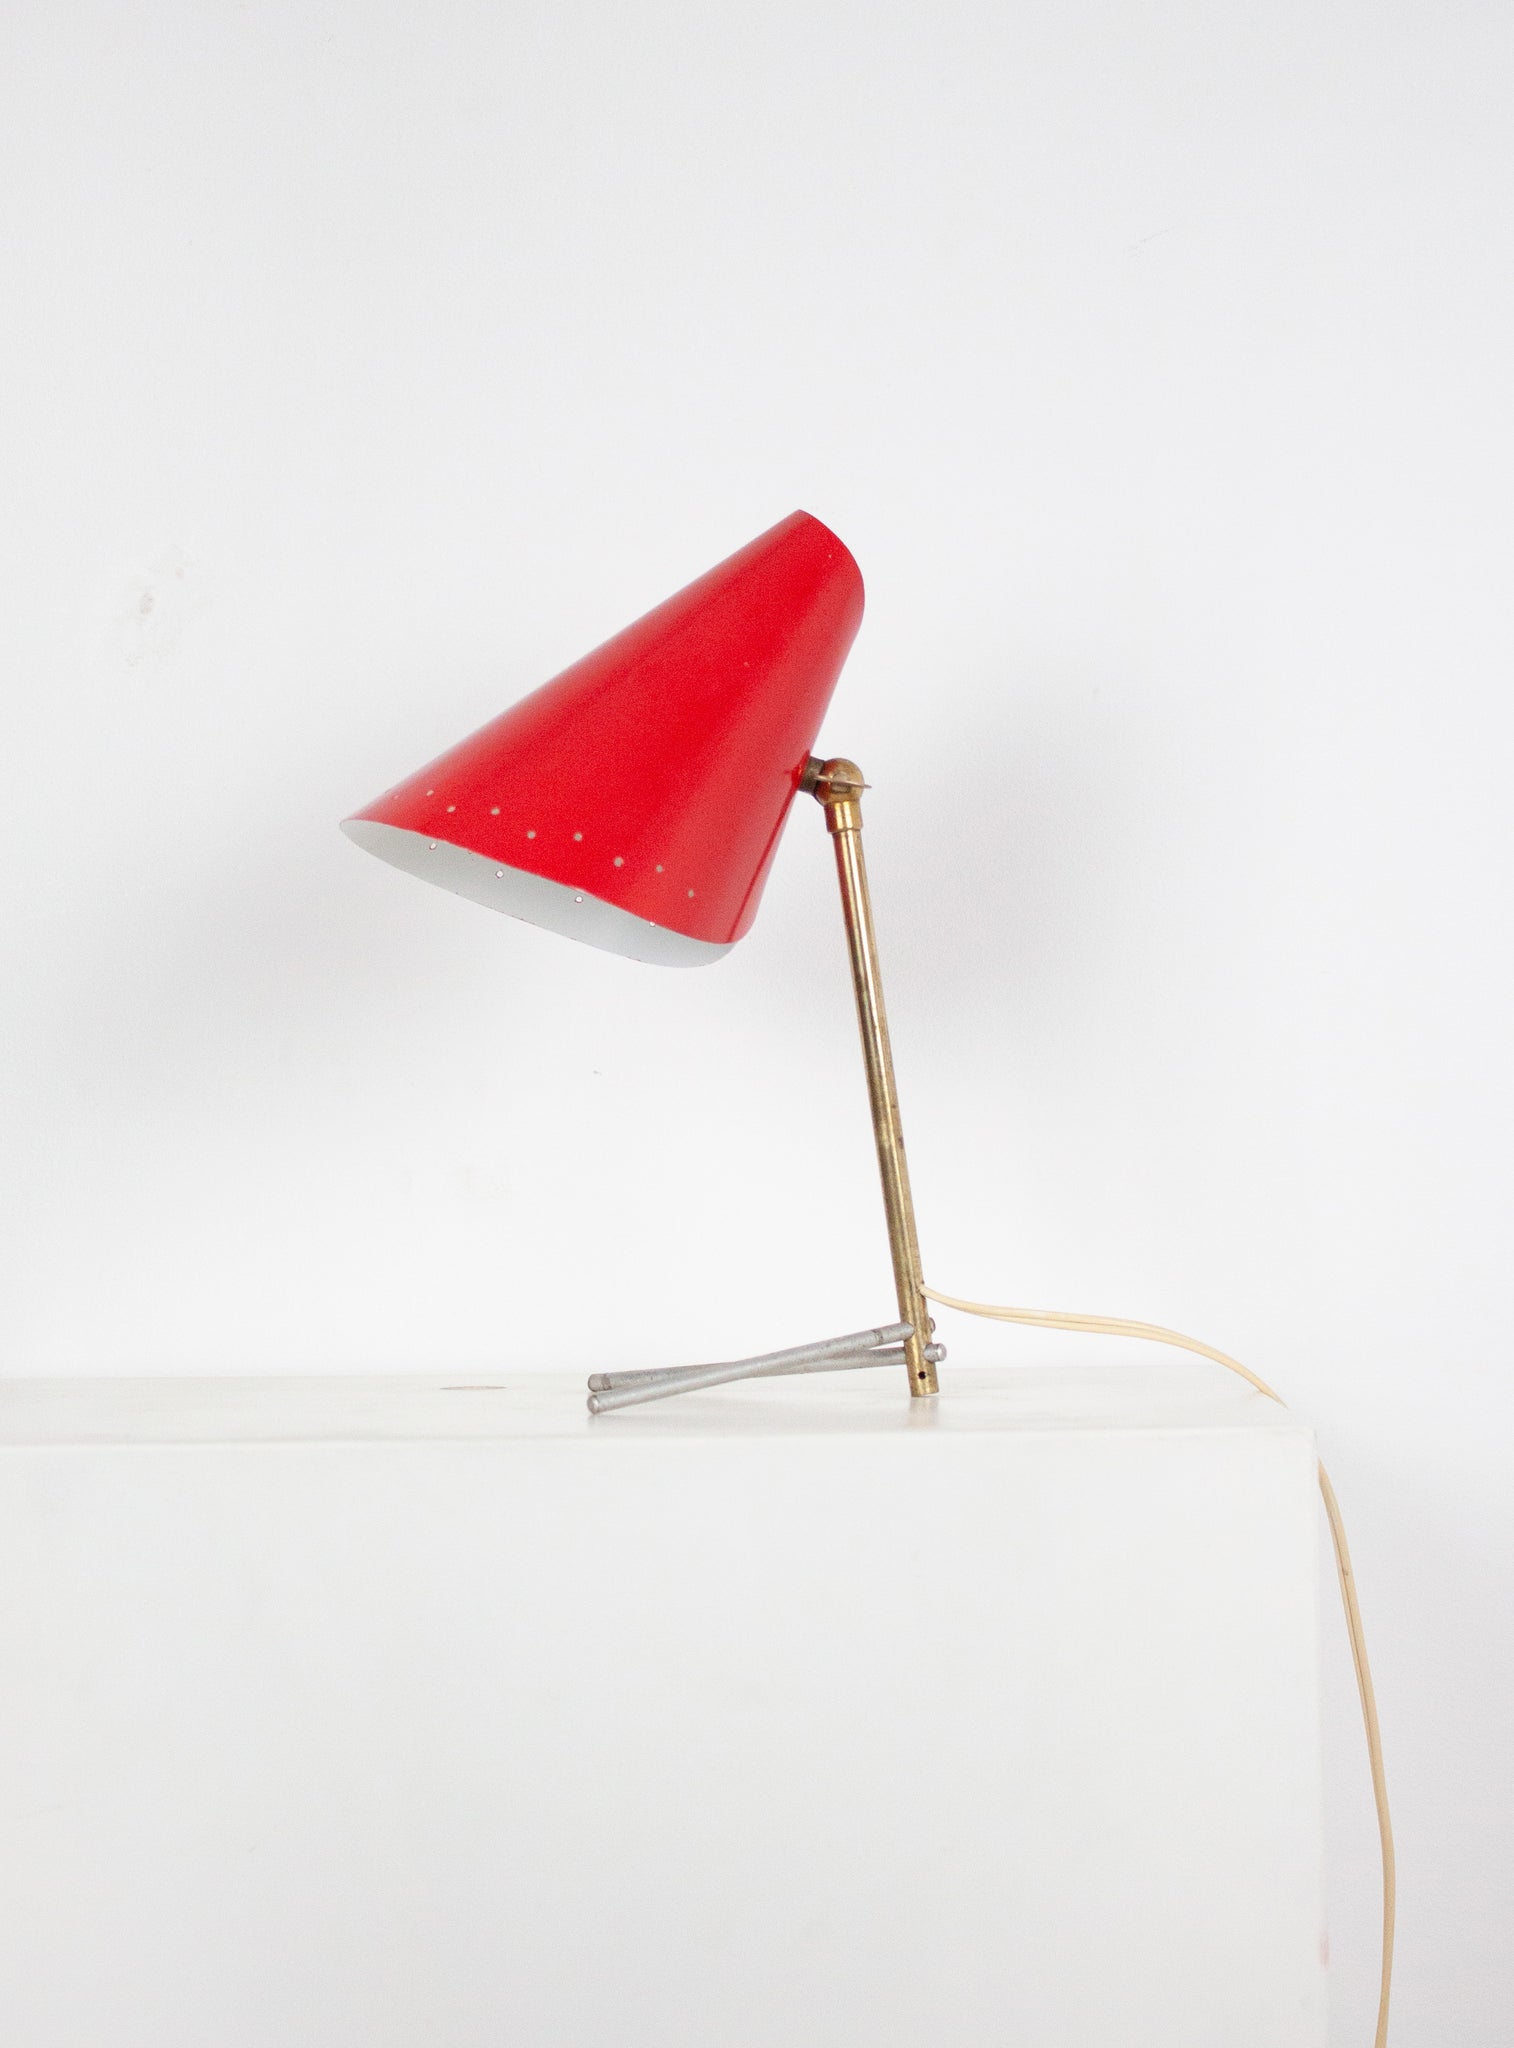 Metal Desk Lamp in style of Stilnovo (Red)